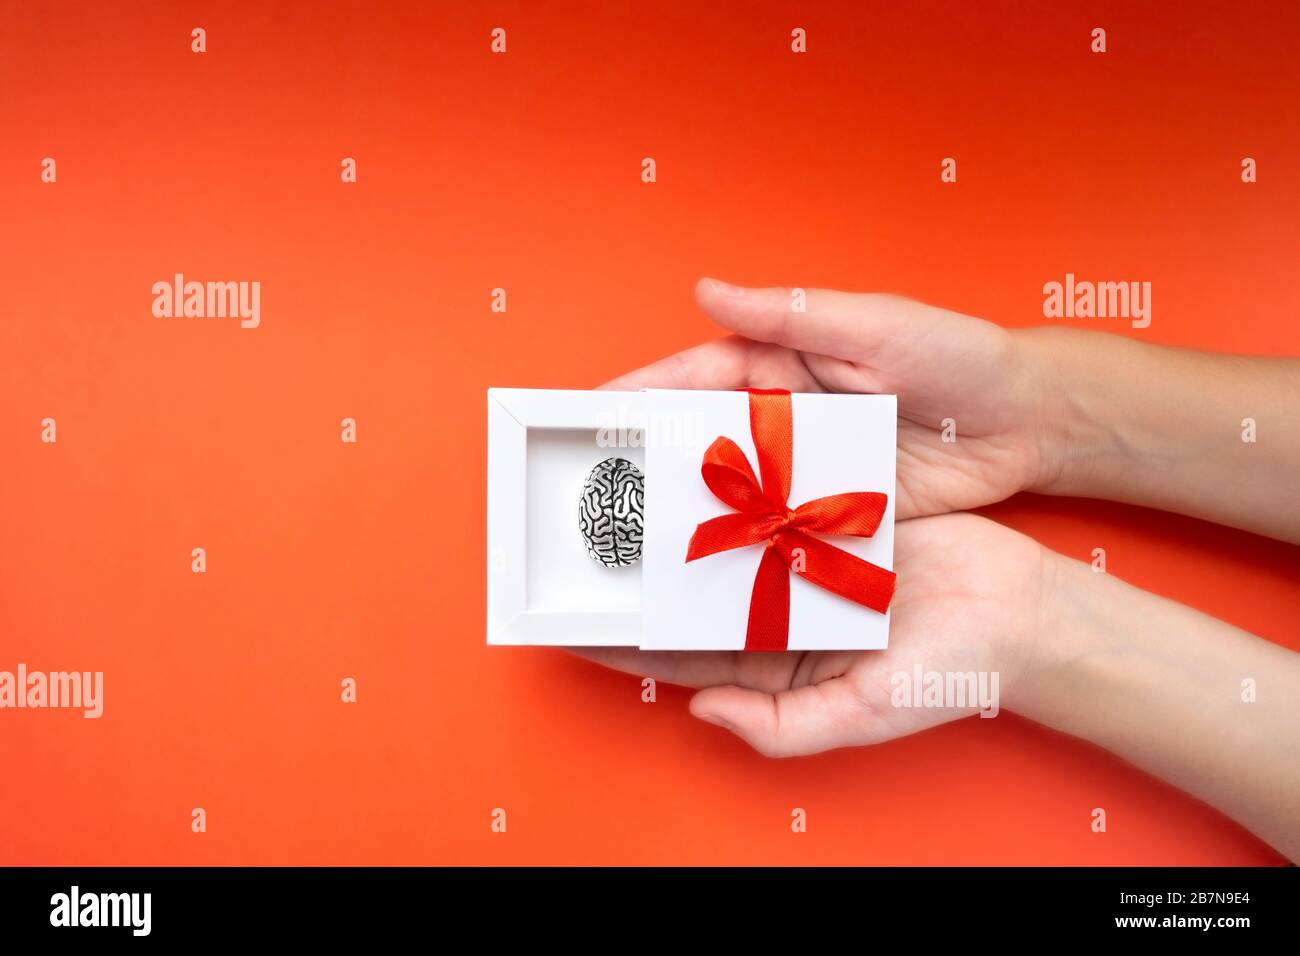 Mani femminili che tengono una scatola regalo bianca con un modello metallico di cervello umano all'interno e un arco rosso sulla copertura. Concetto creativo attuale. Foto Stock